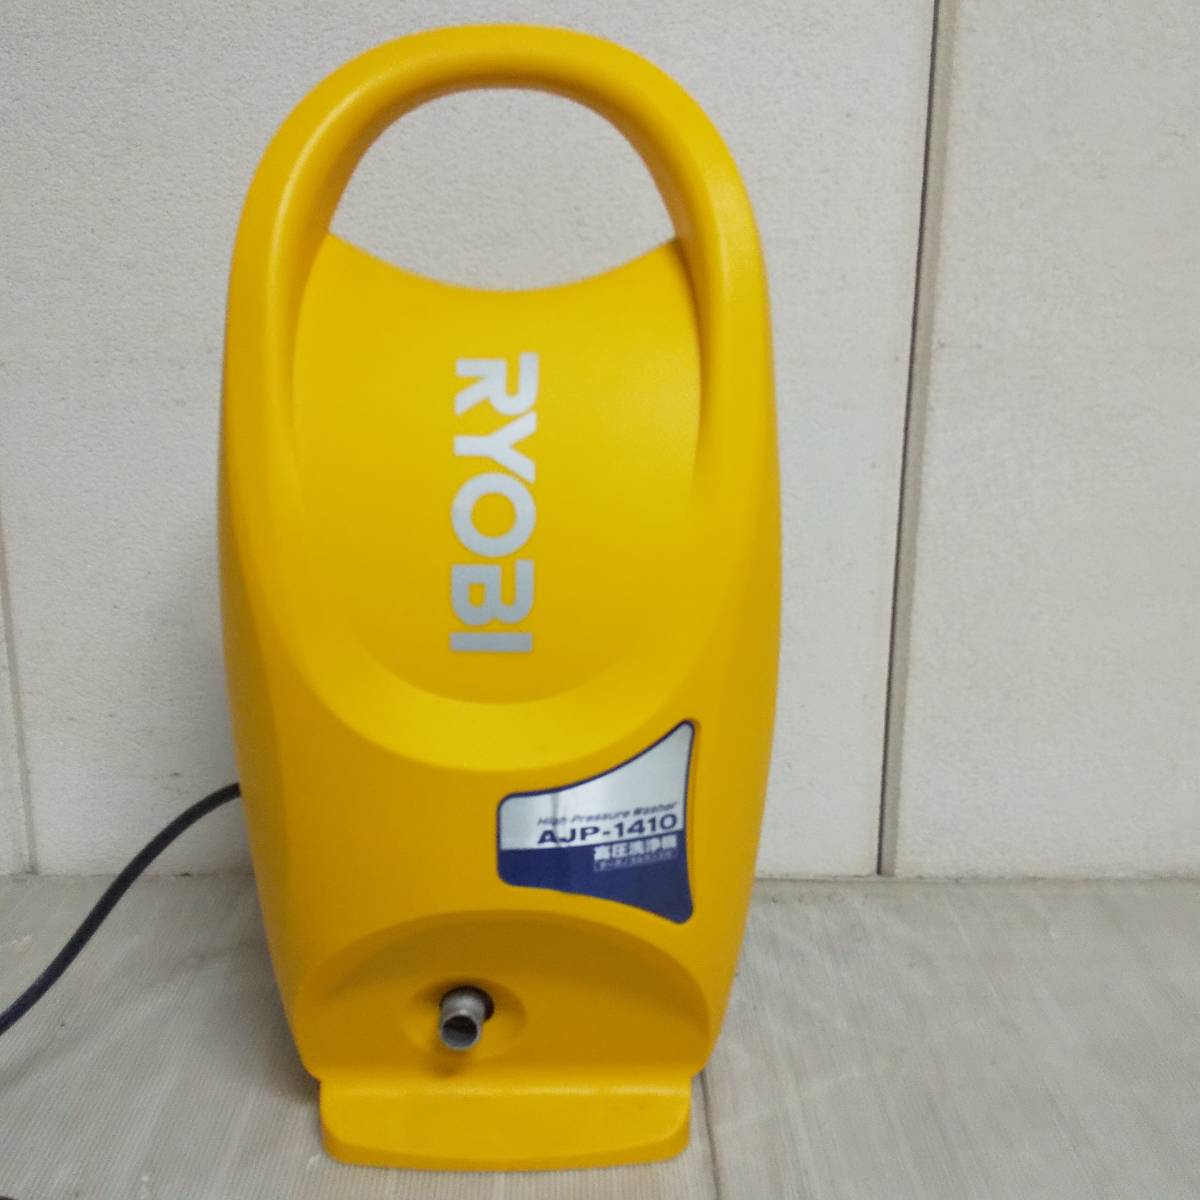 ◆RYOBI リョービ 高圧洗浄機 AJP-1410 家庭用高圧洗浄機 通電確認のみ 現状品◆C1981_画像2